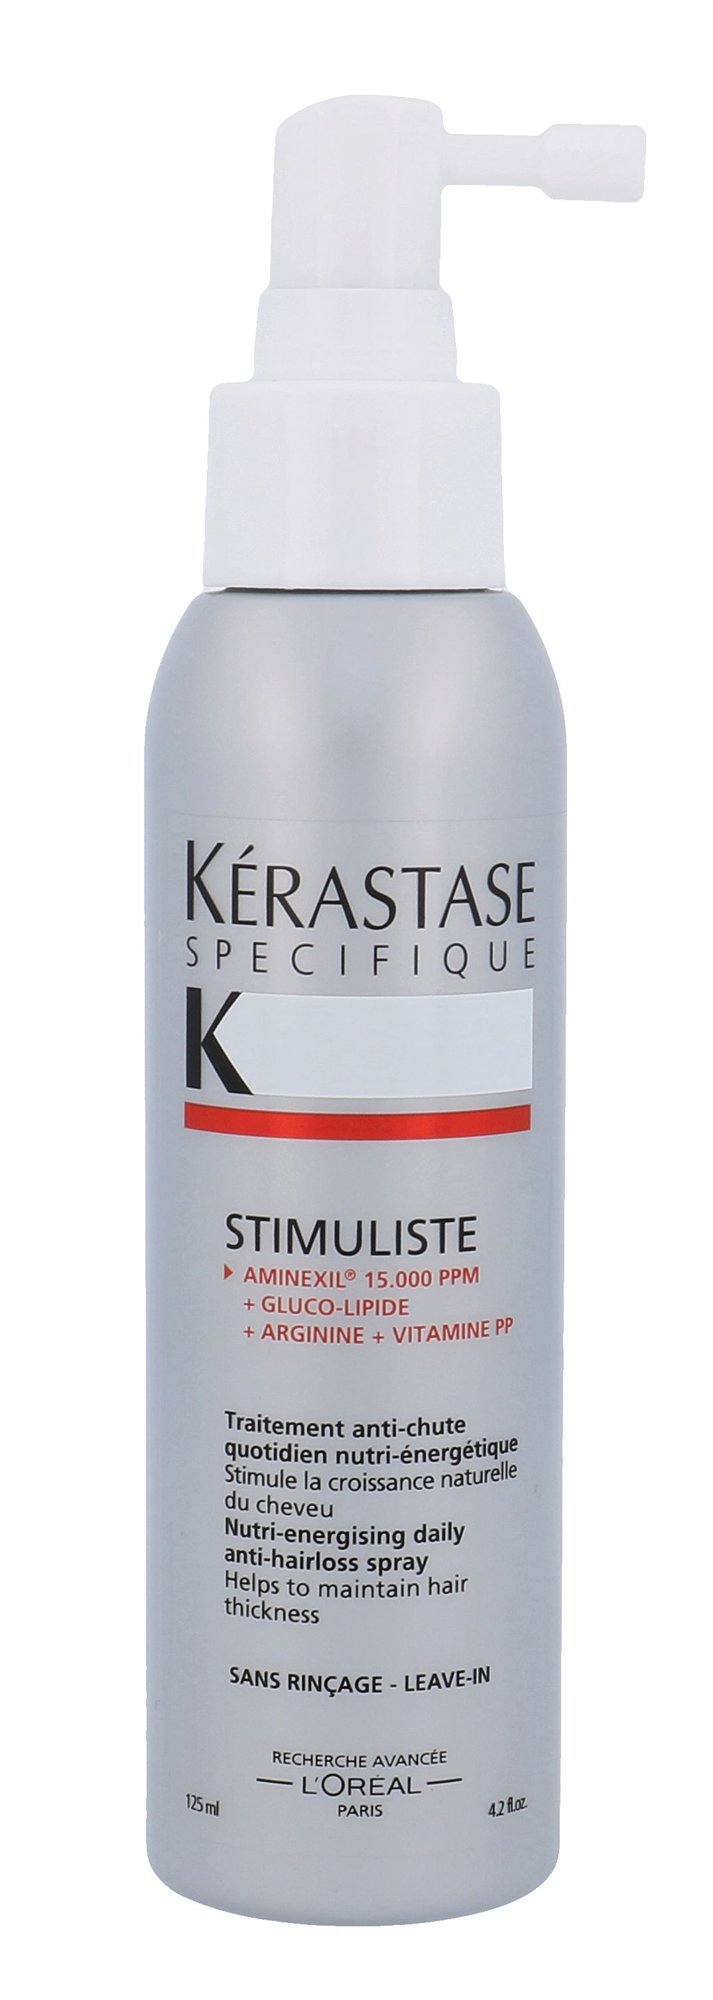 Kérastase Spécifique Stimuliste 125ml priemonė nuo plaukų slinkimo Testeris